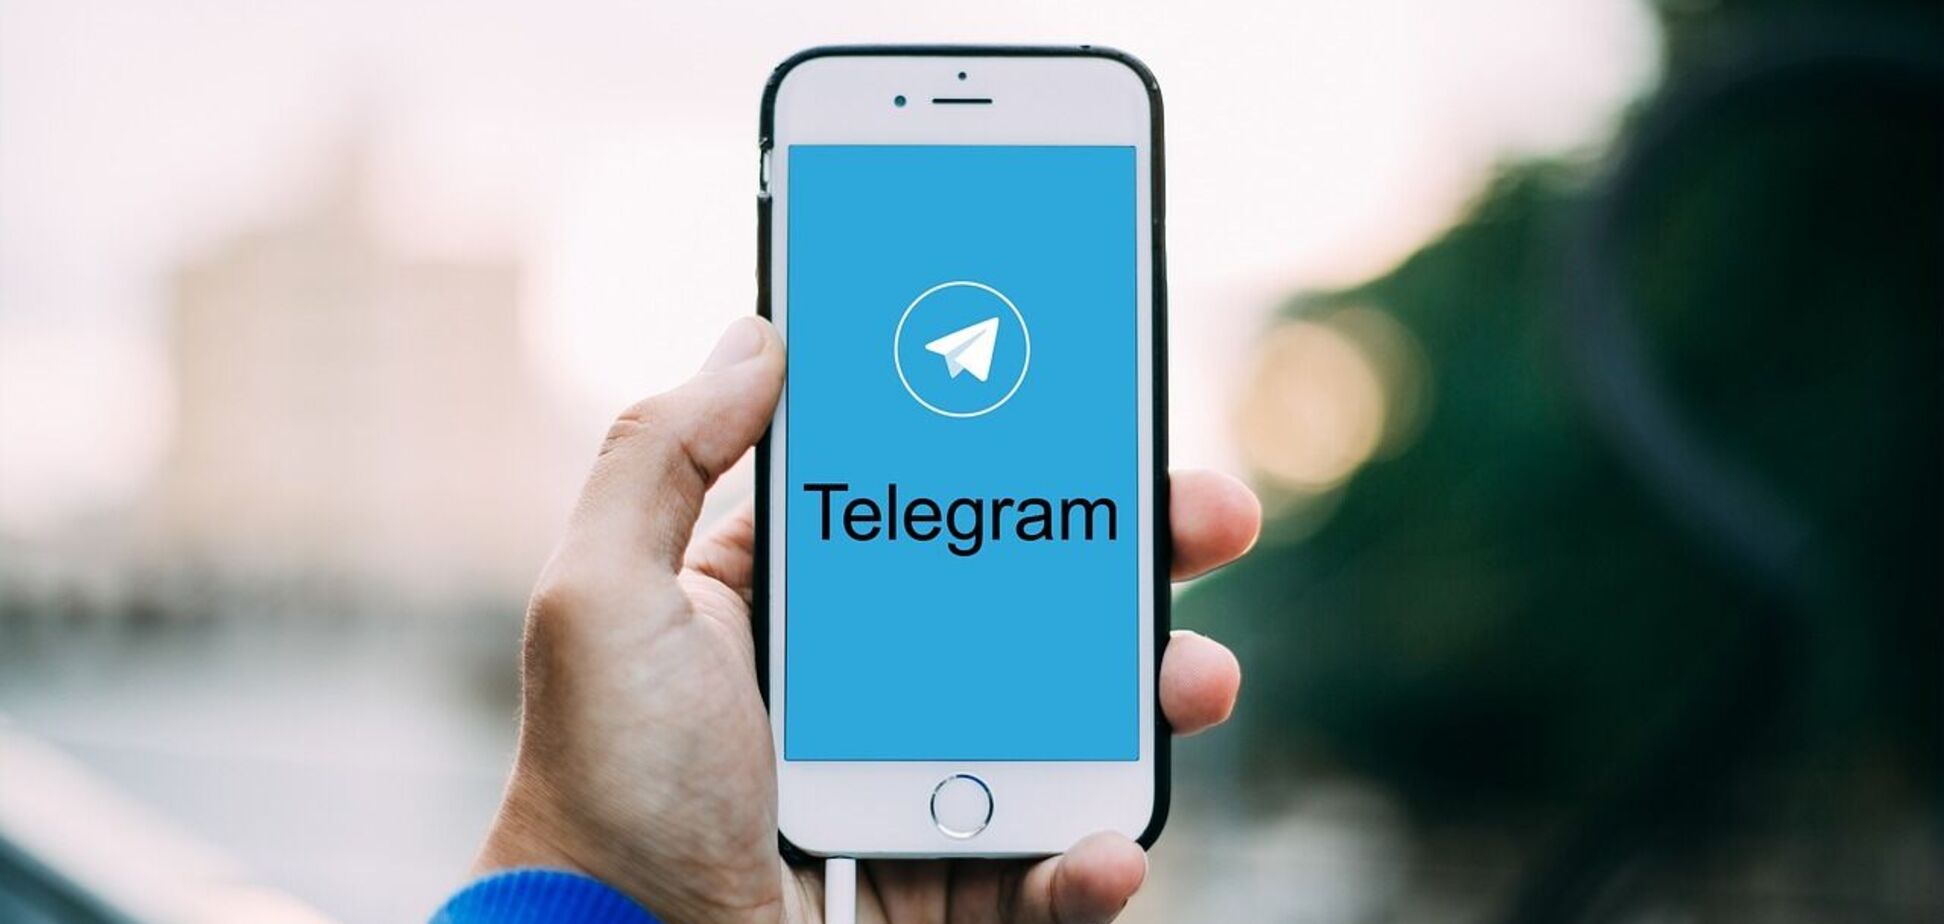 Немає логіки, є брехня, або 'Telegram небезпечний' не може існувати поруч із 'Підписуйтеся на офіційний Telegram'
